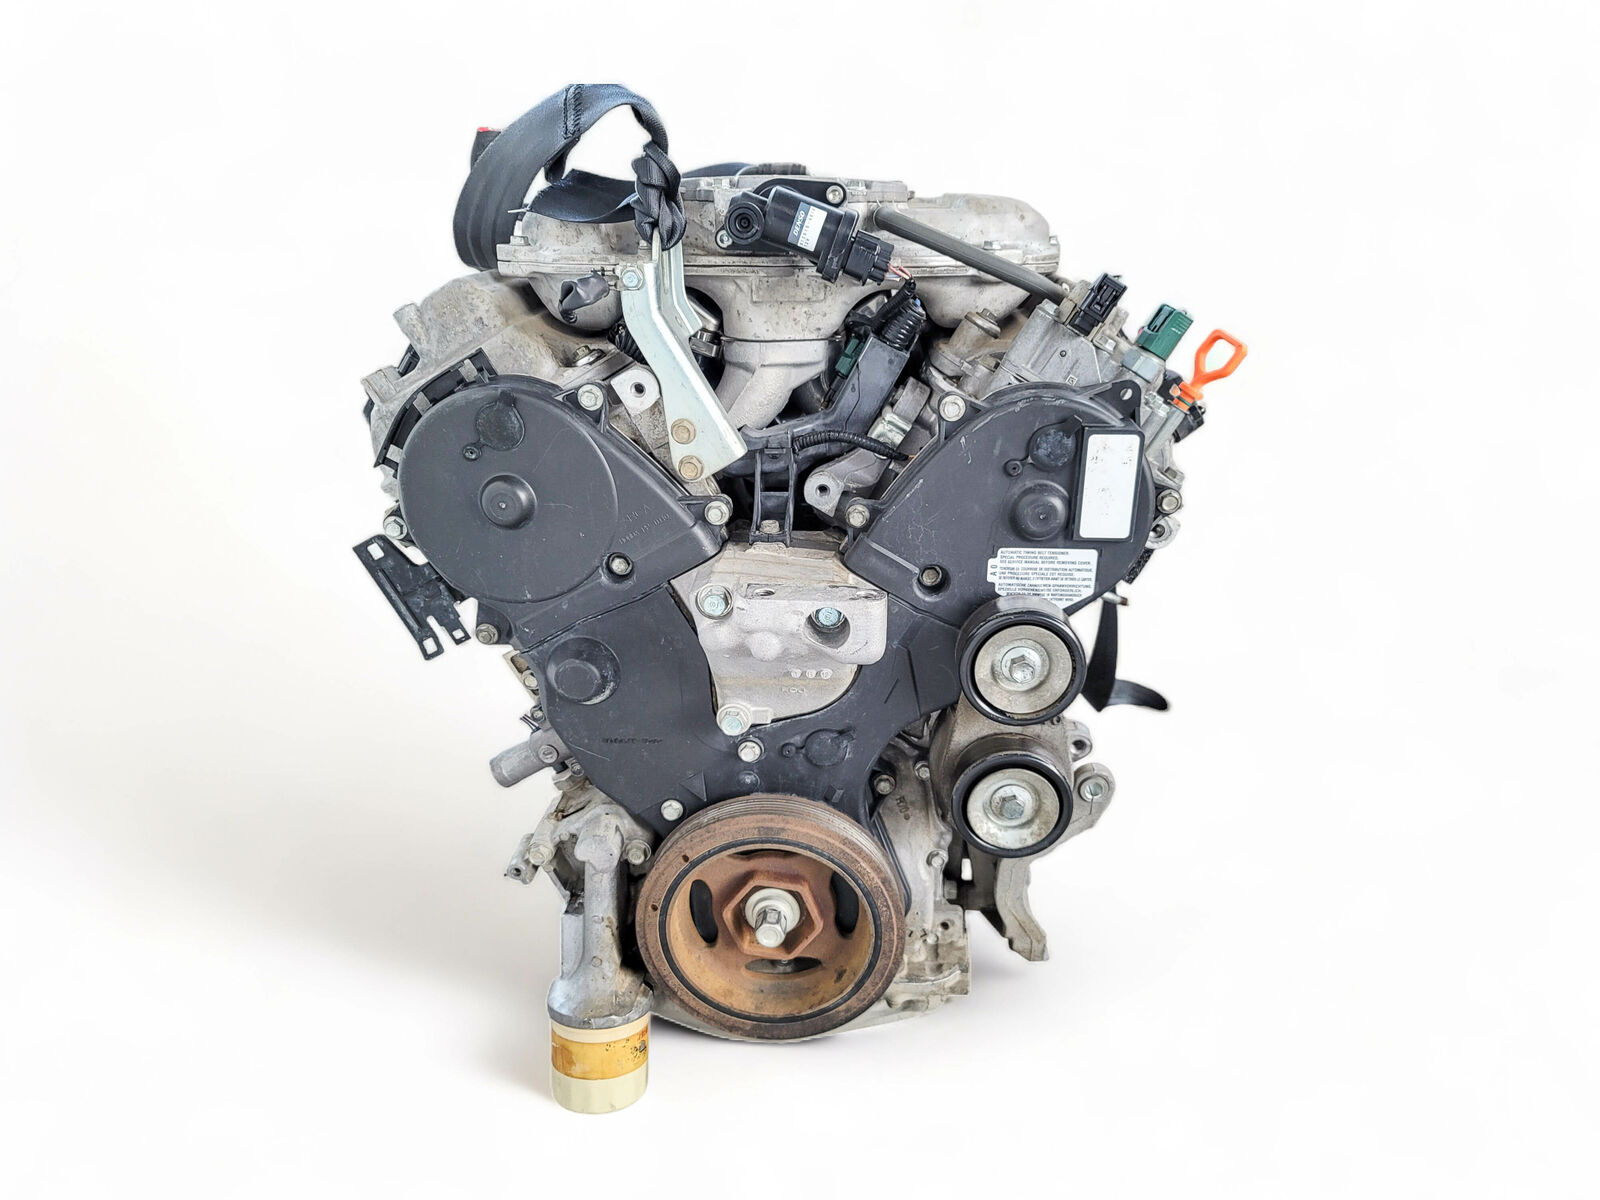 Honda Odyssey 3.5L V6 engines 2011 to 2017